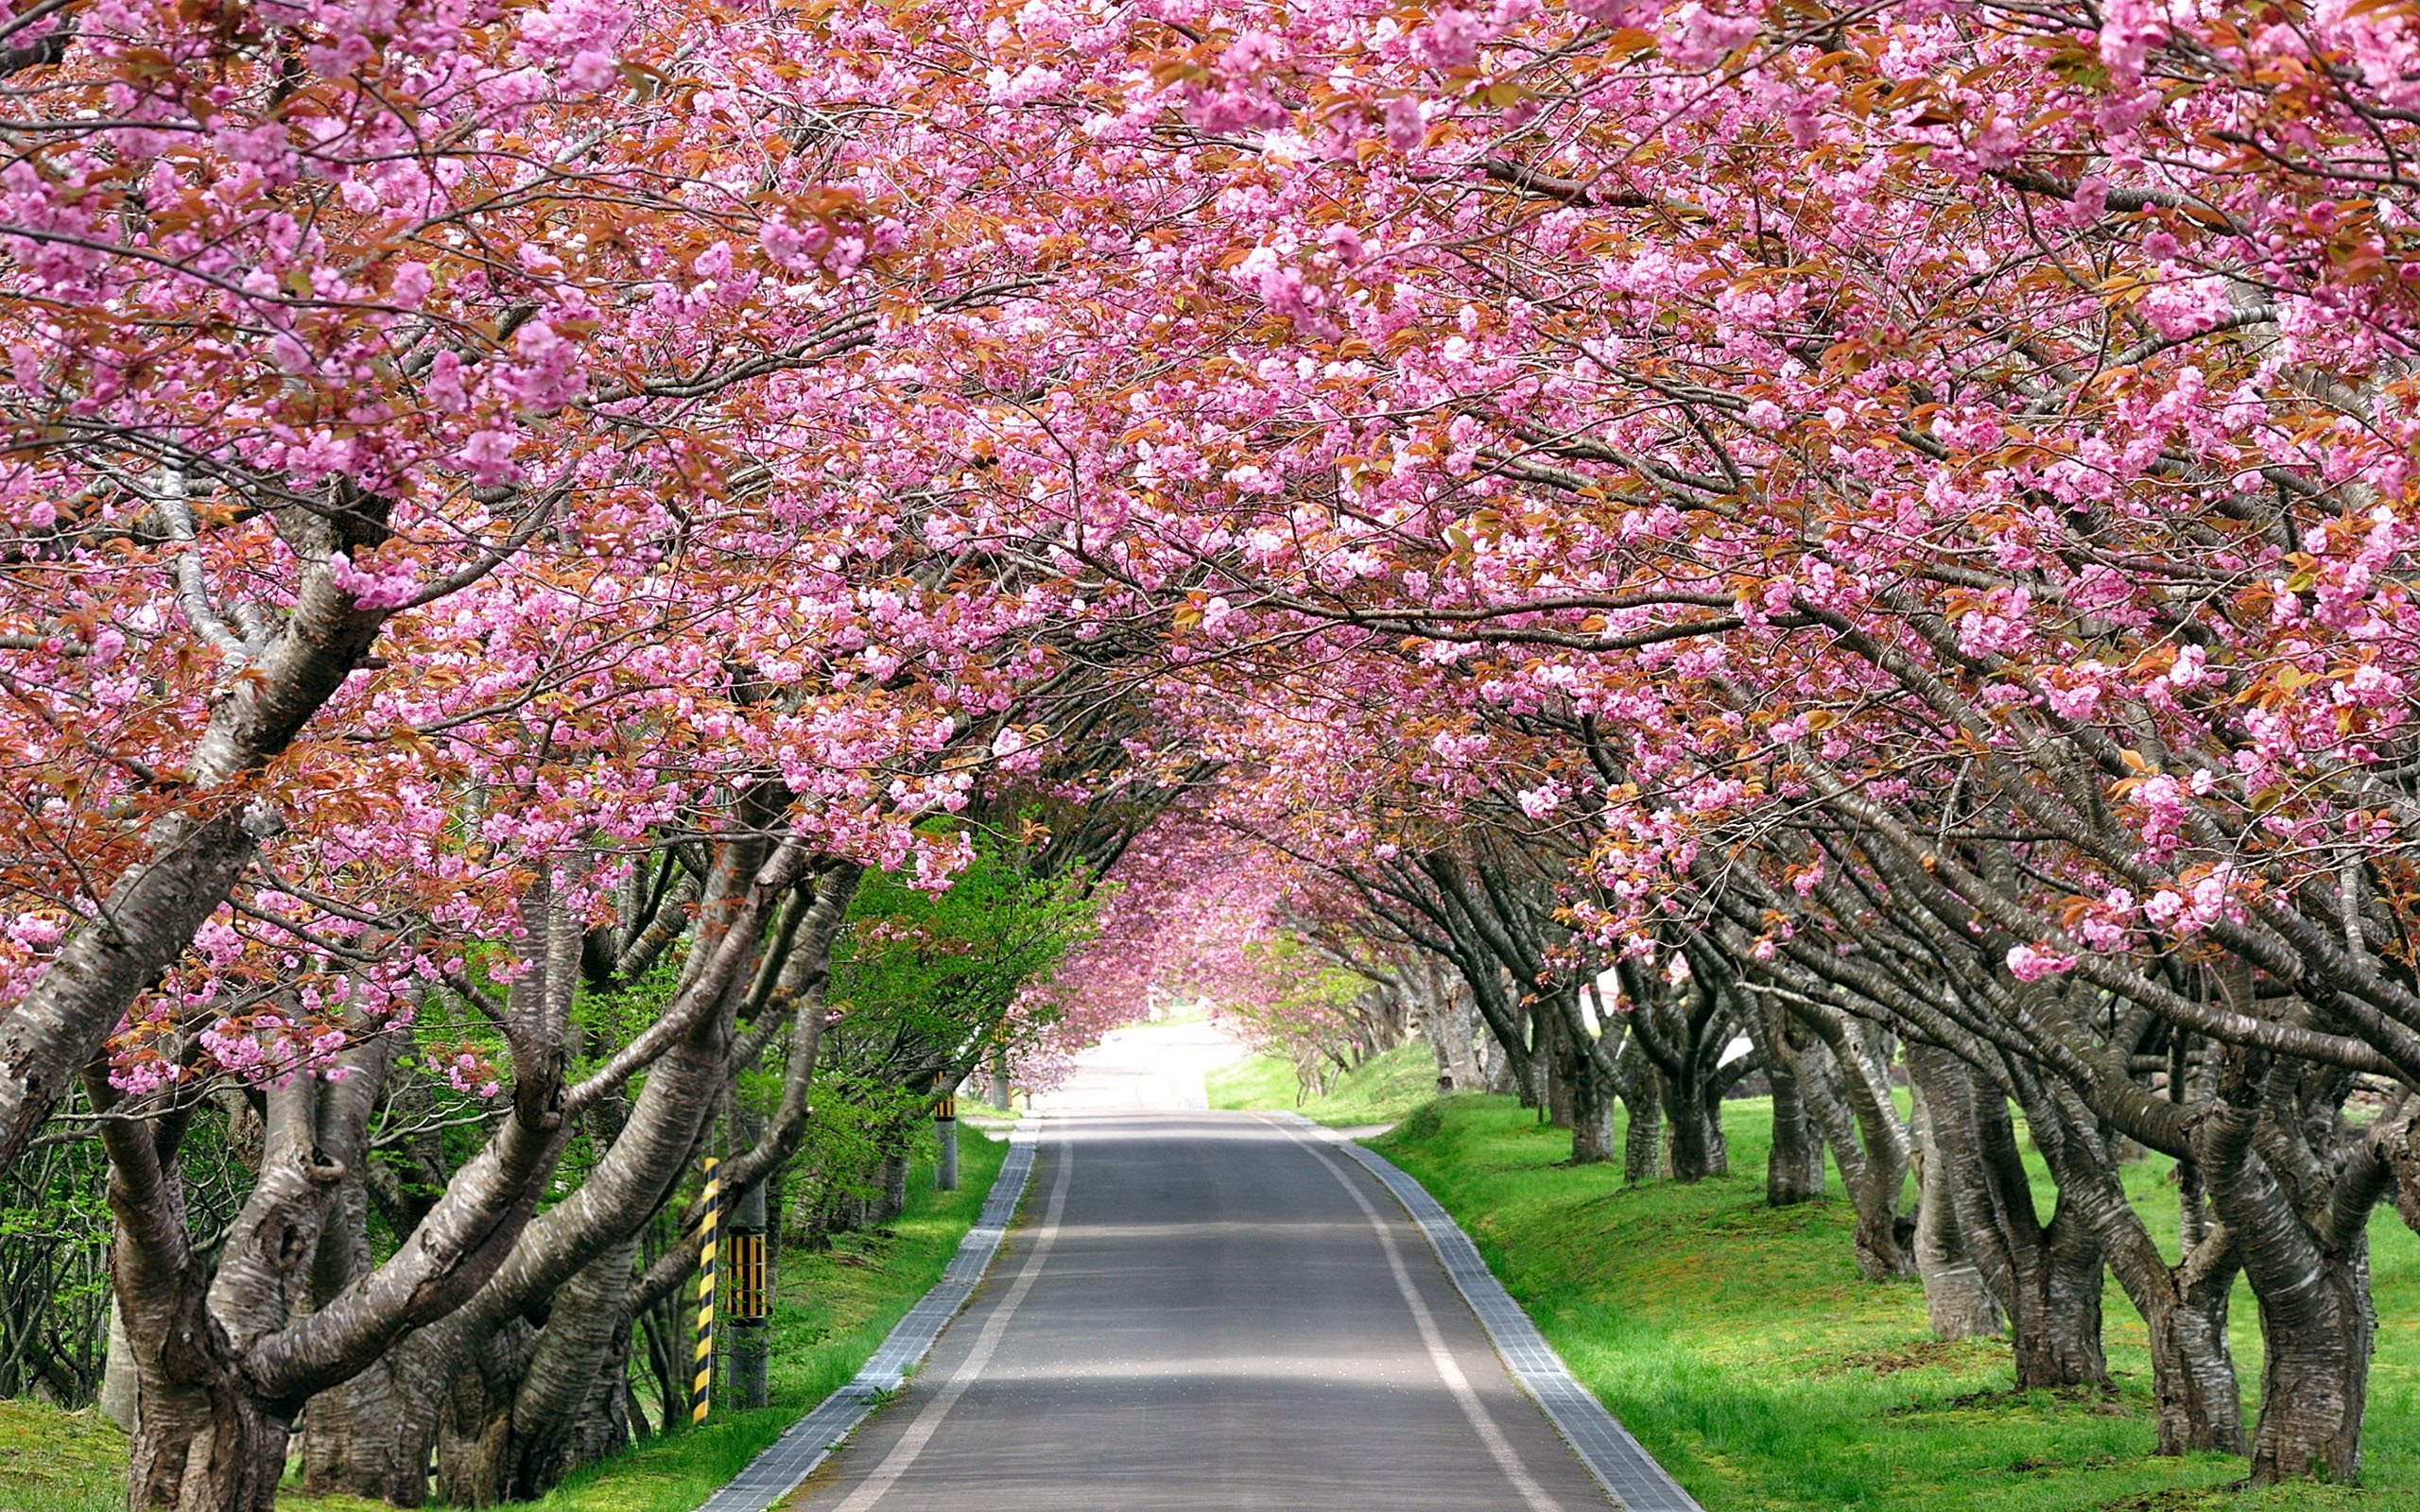 ダウンロード画像 パーク 桜 桜の名所 路地 画面の解像度 2560x1600 壁紙デスクトップ上